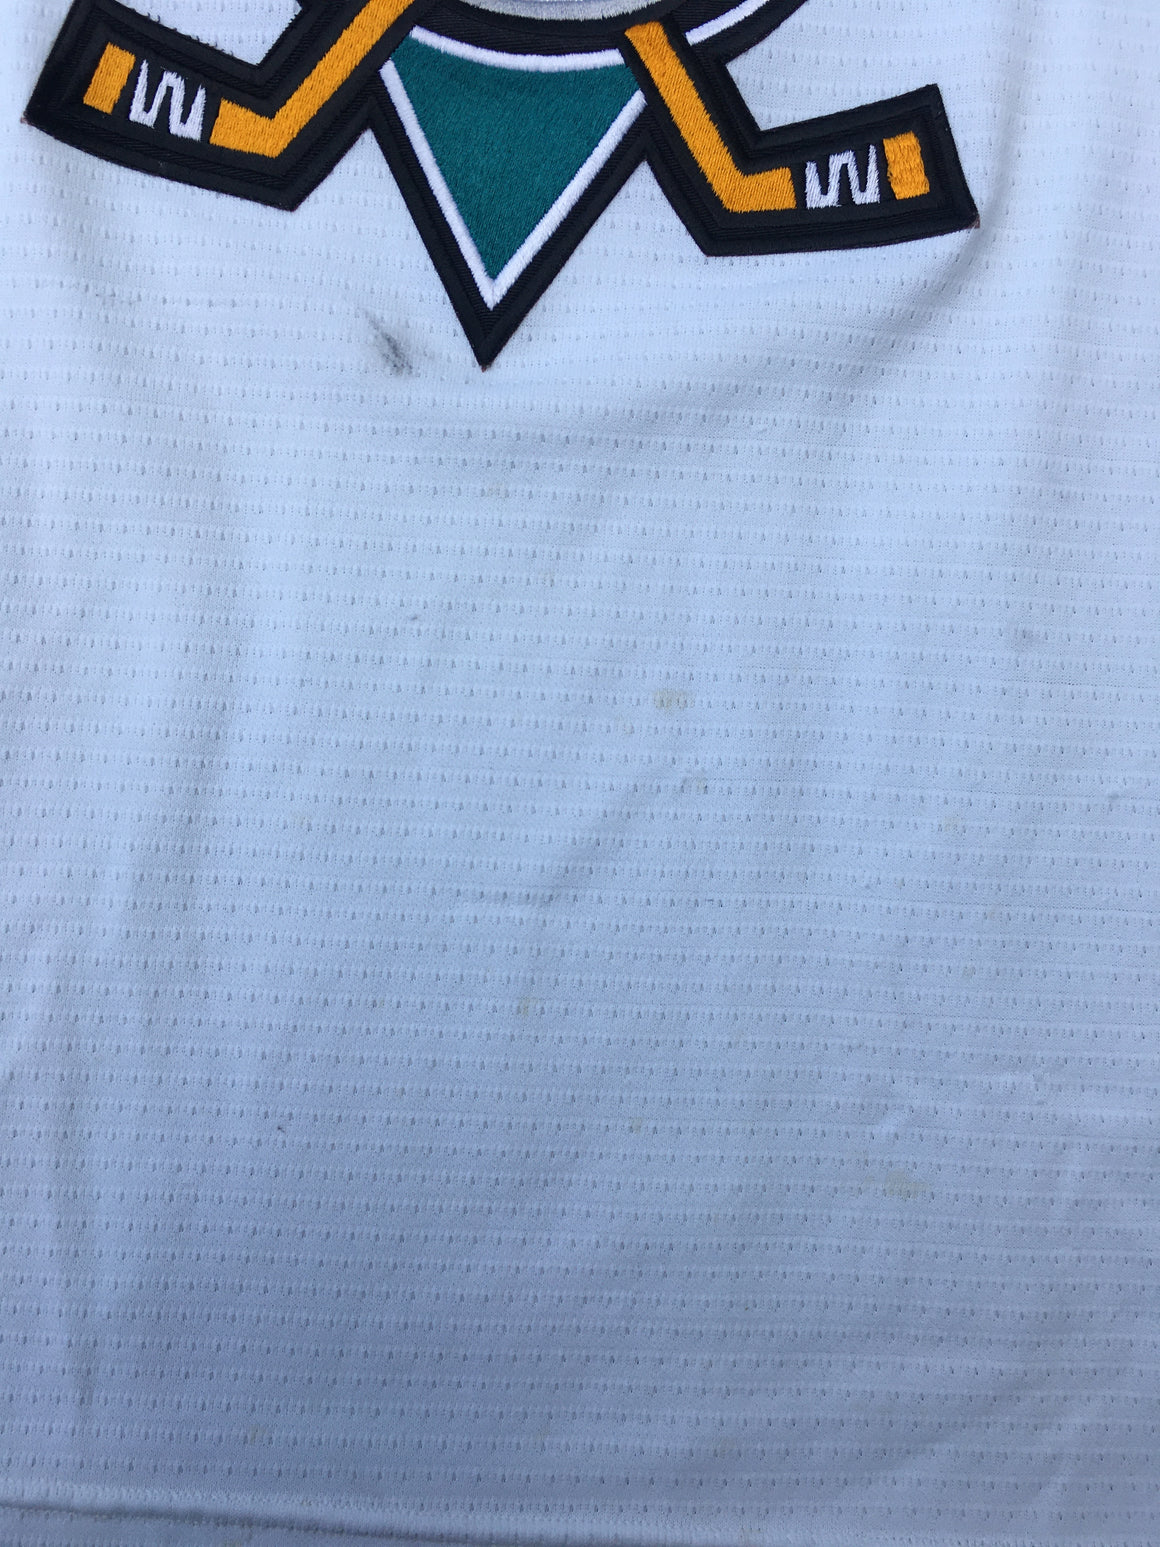 Anaheim Mighty Ducks 90s Jersey - XL